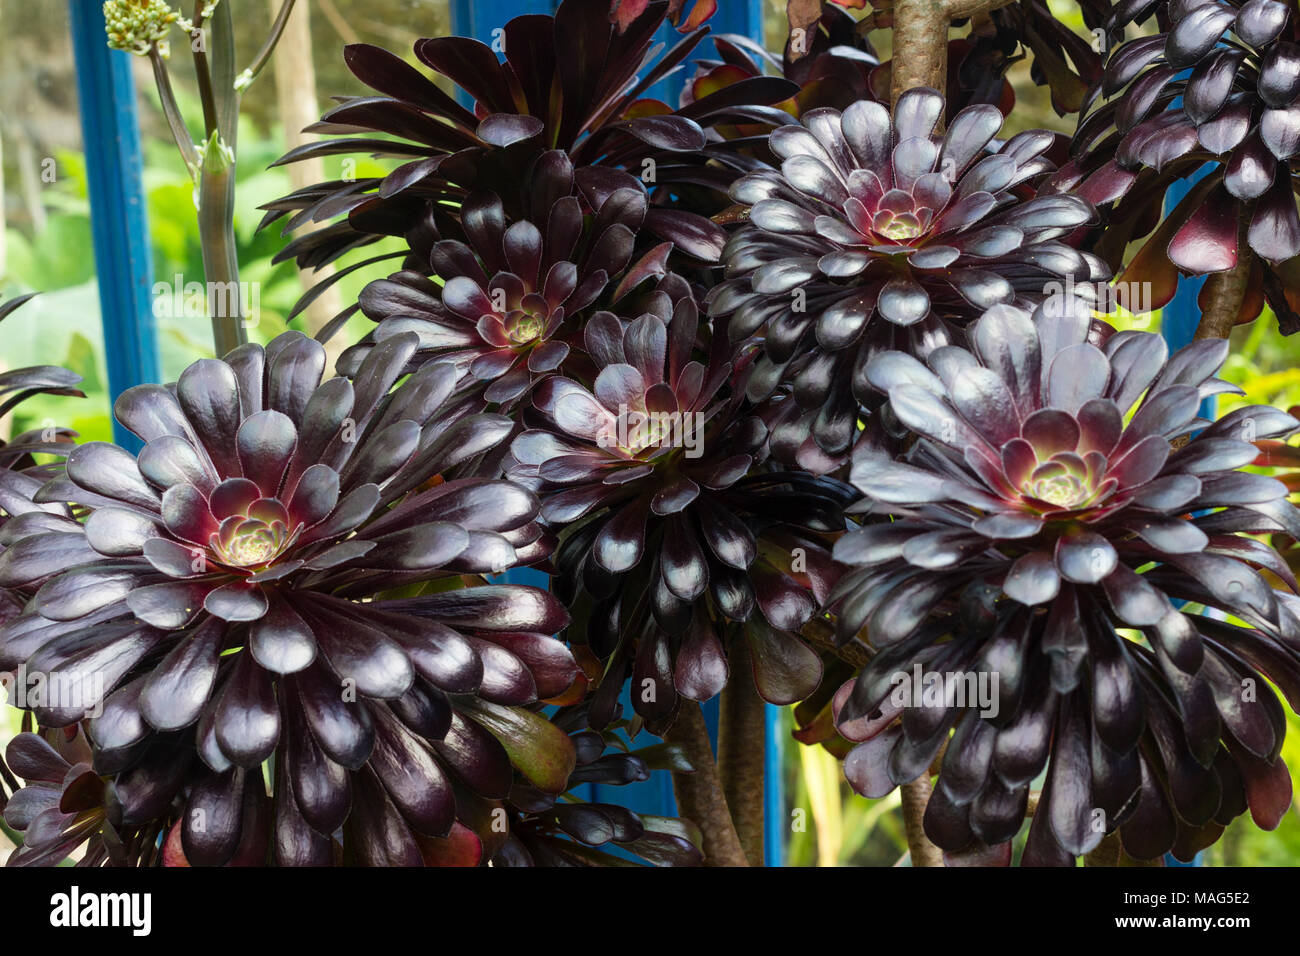 Rosetas negro carnosa de la forma seleccionada del árbol aeonium, Aeonium arboreum 'Schwarzkopf' Foto de stock